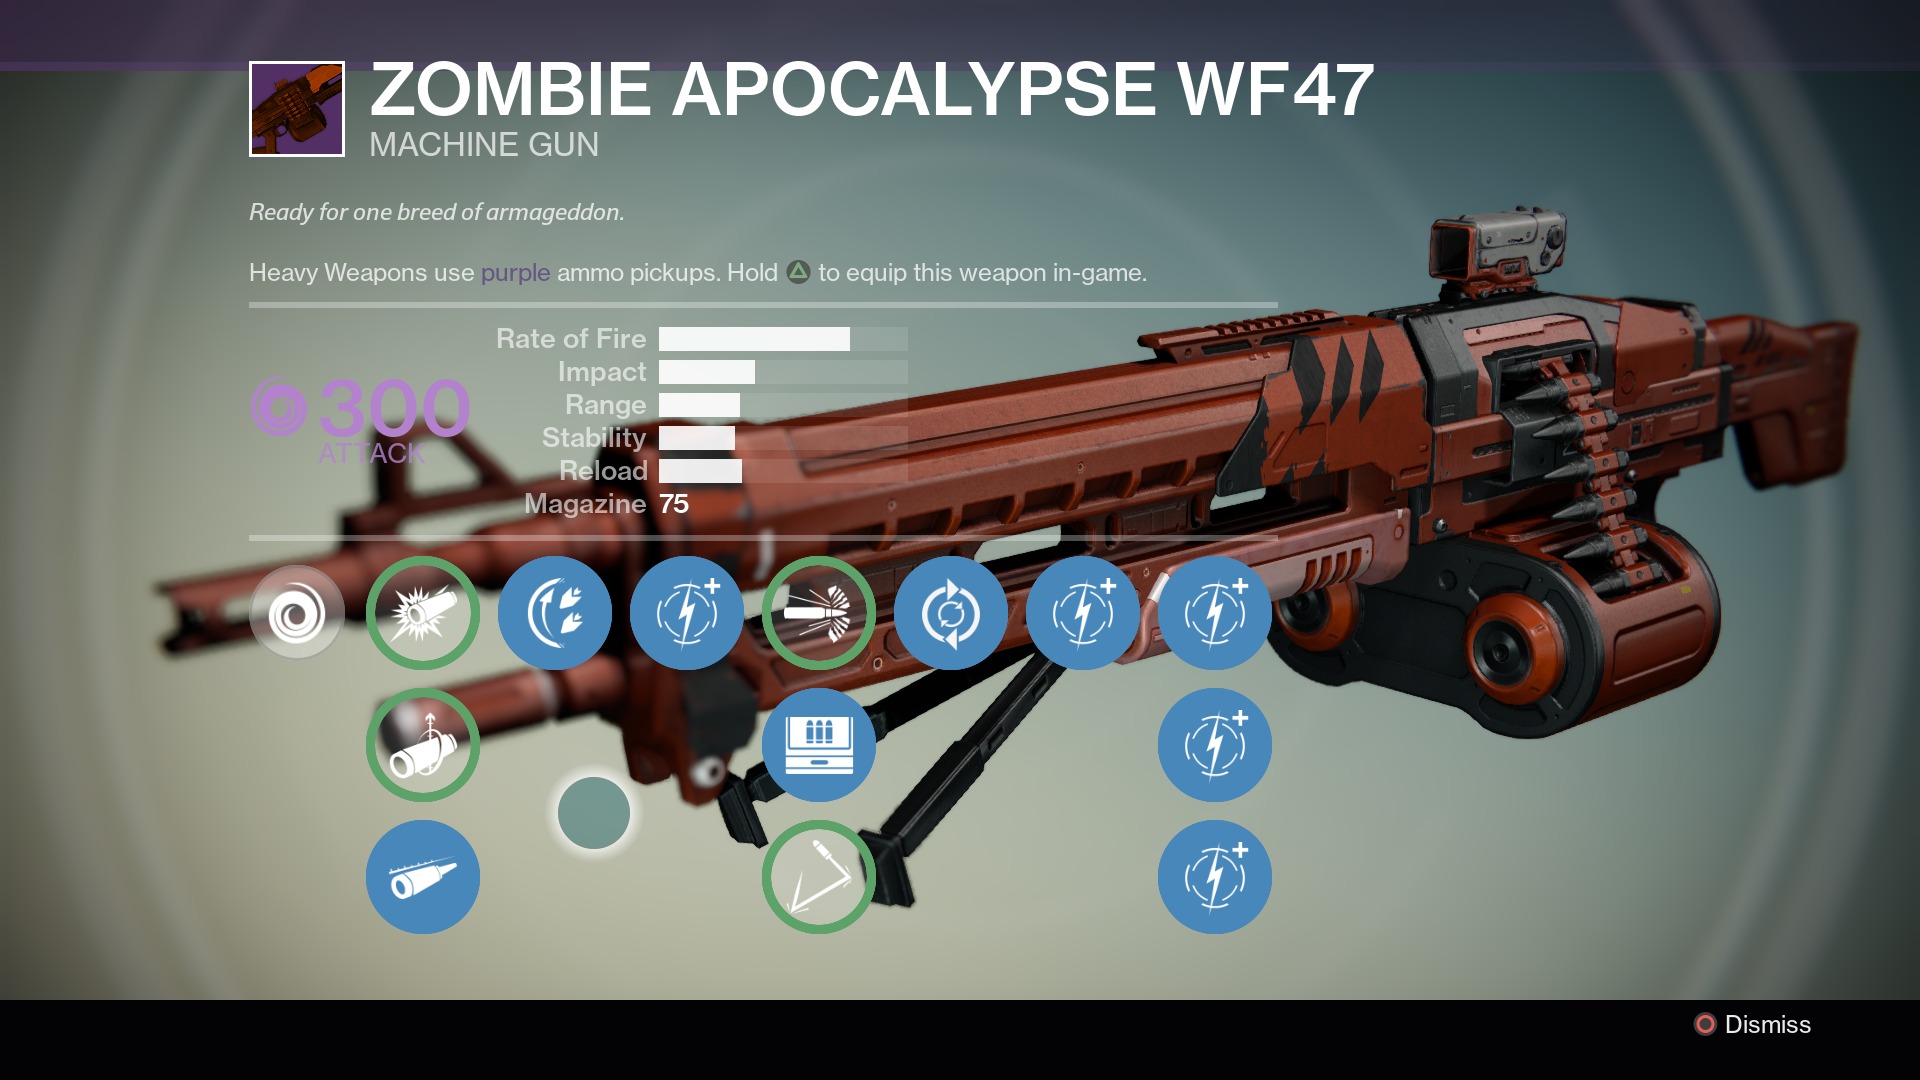 Zombie Apocolypse WF47